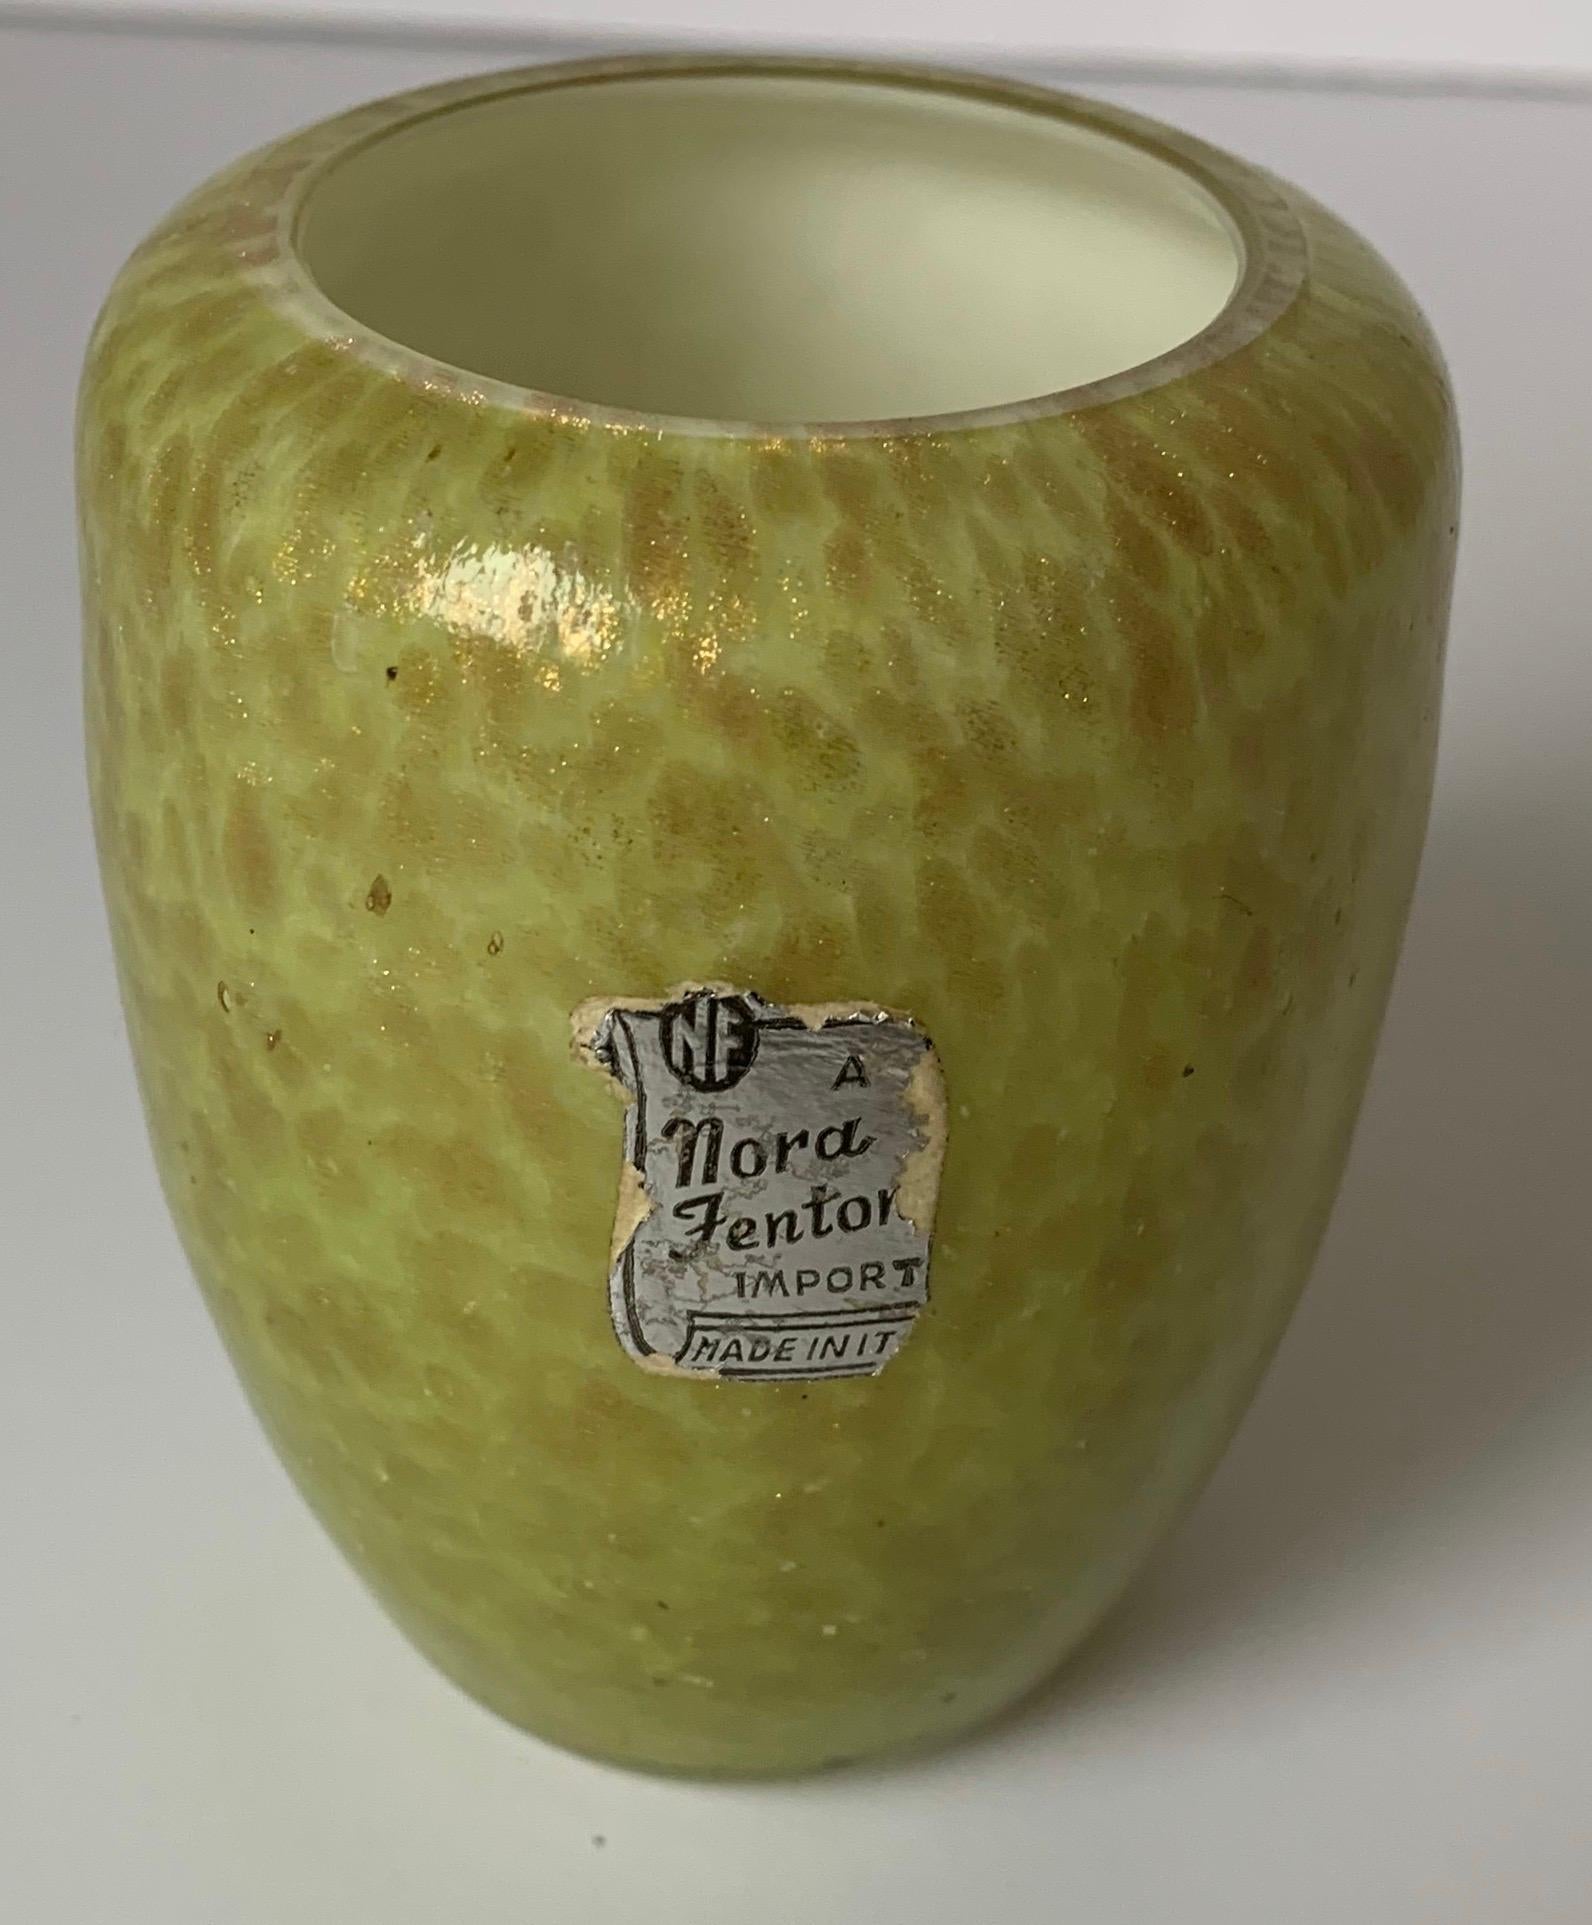 Italienische Knospenvase aus geblasenem Murano-Glas, importiert von Nora Fenton. Hellgrünes, geblasenes Glas mit durchgehender Goldsprenkelung. Die Vase behält ihr originales Label.